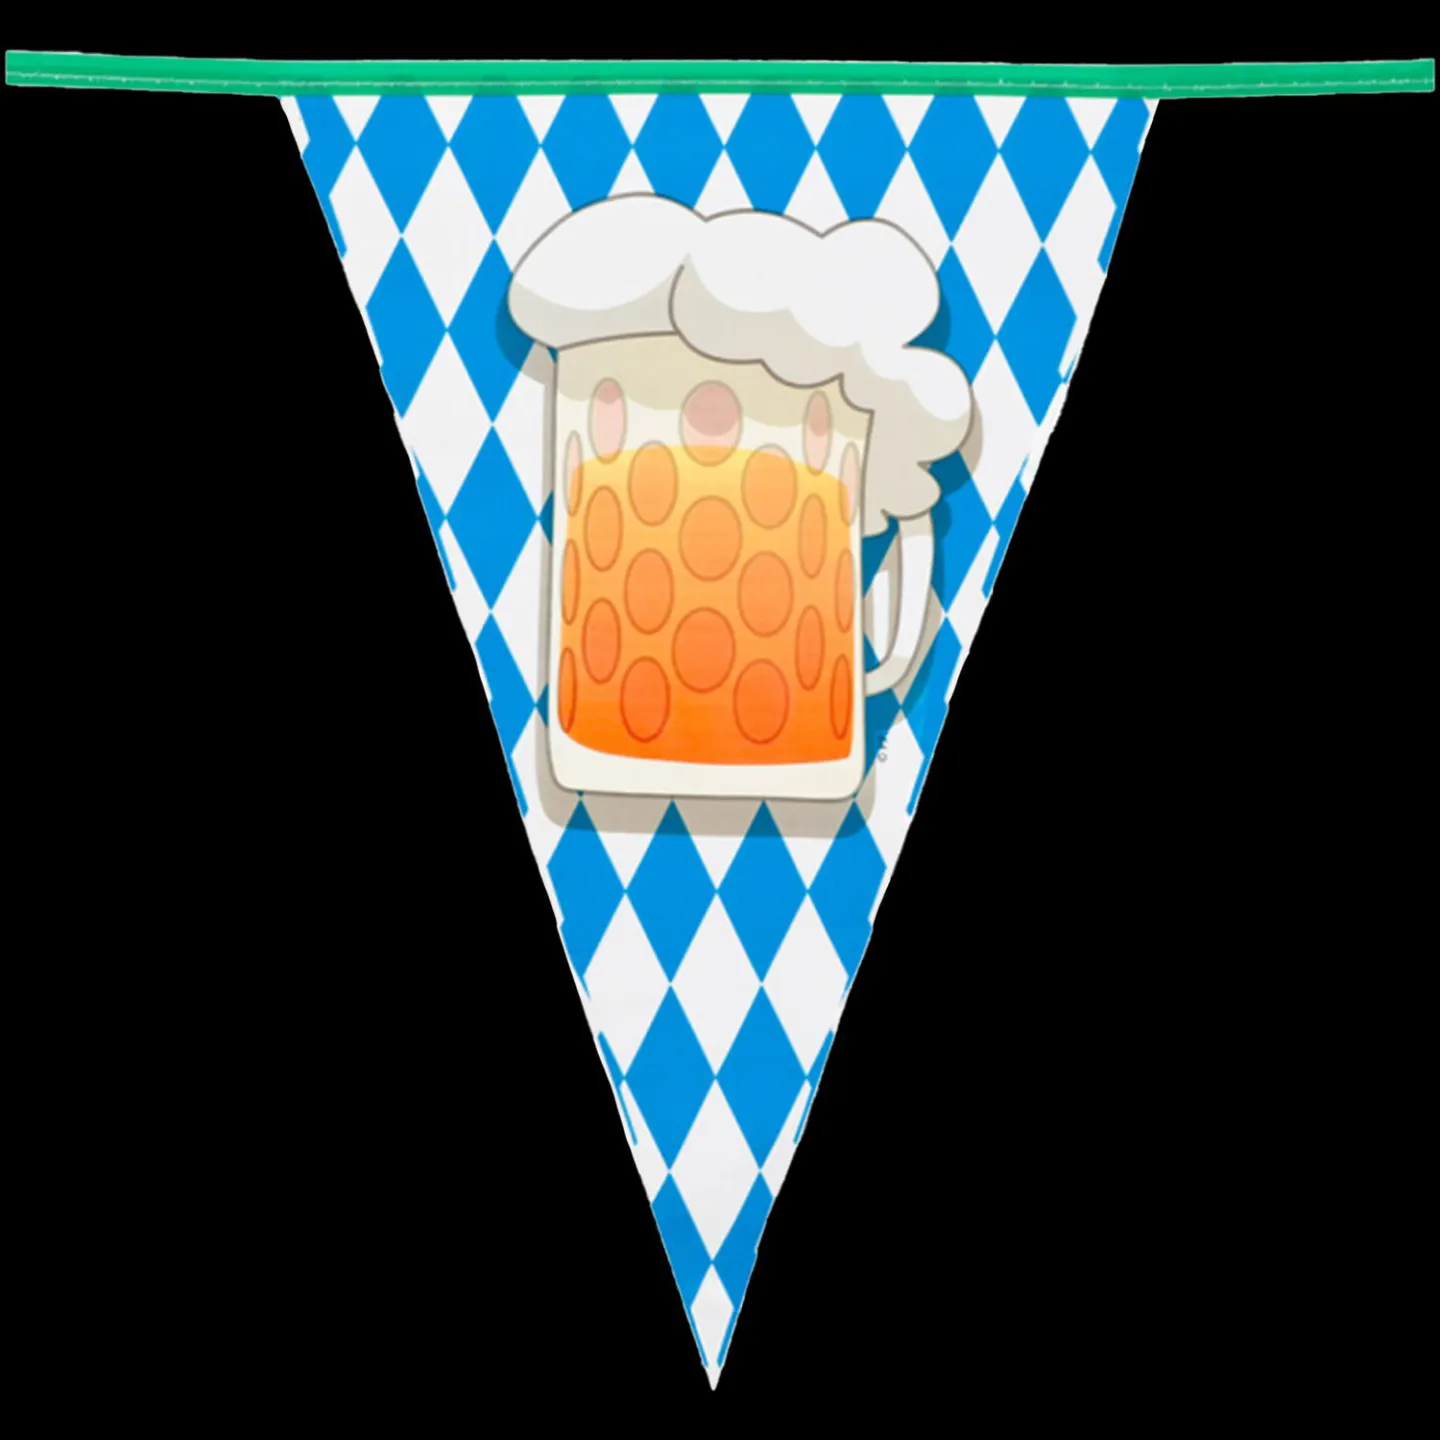 Oktoberfest vlaggenlijn bierglas kopen.